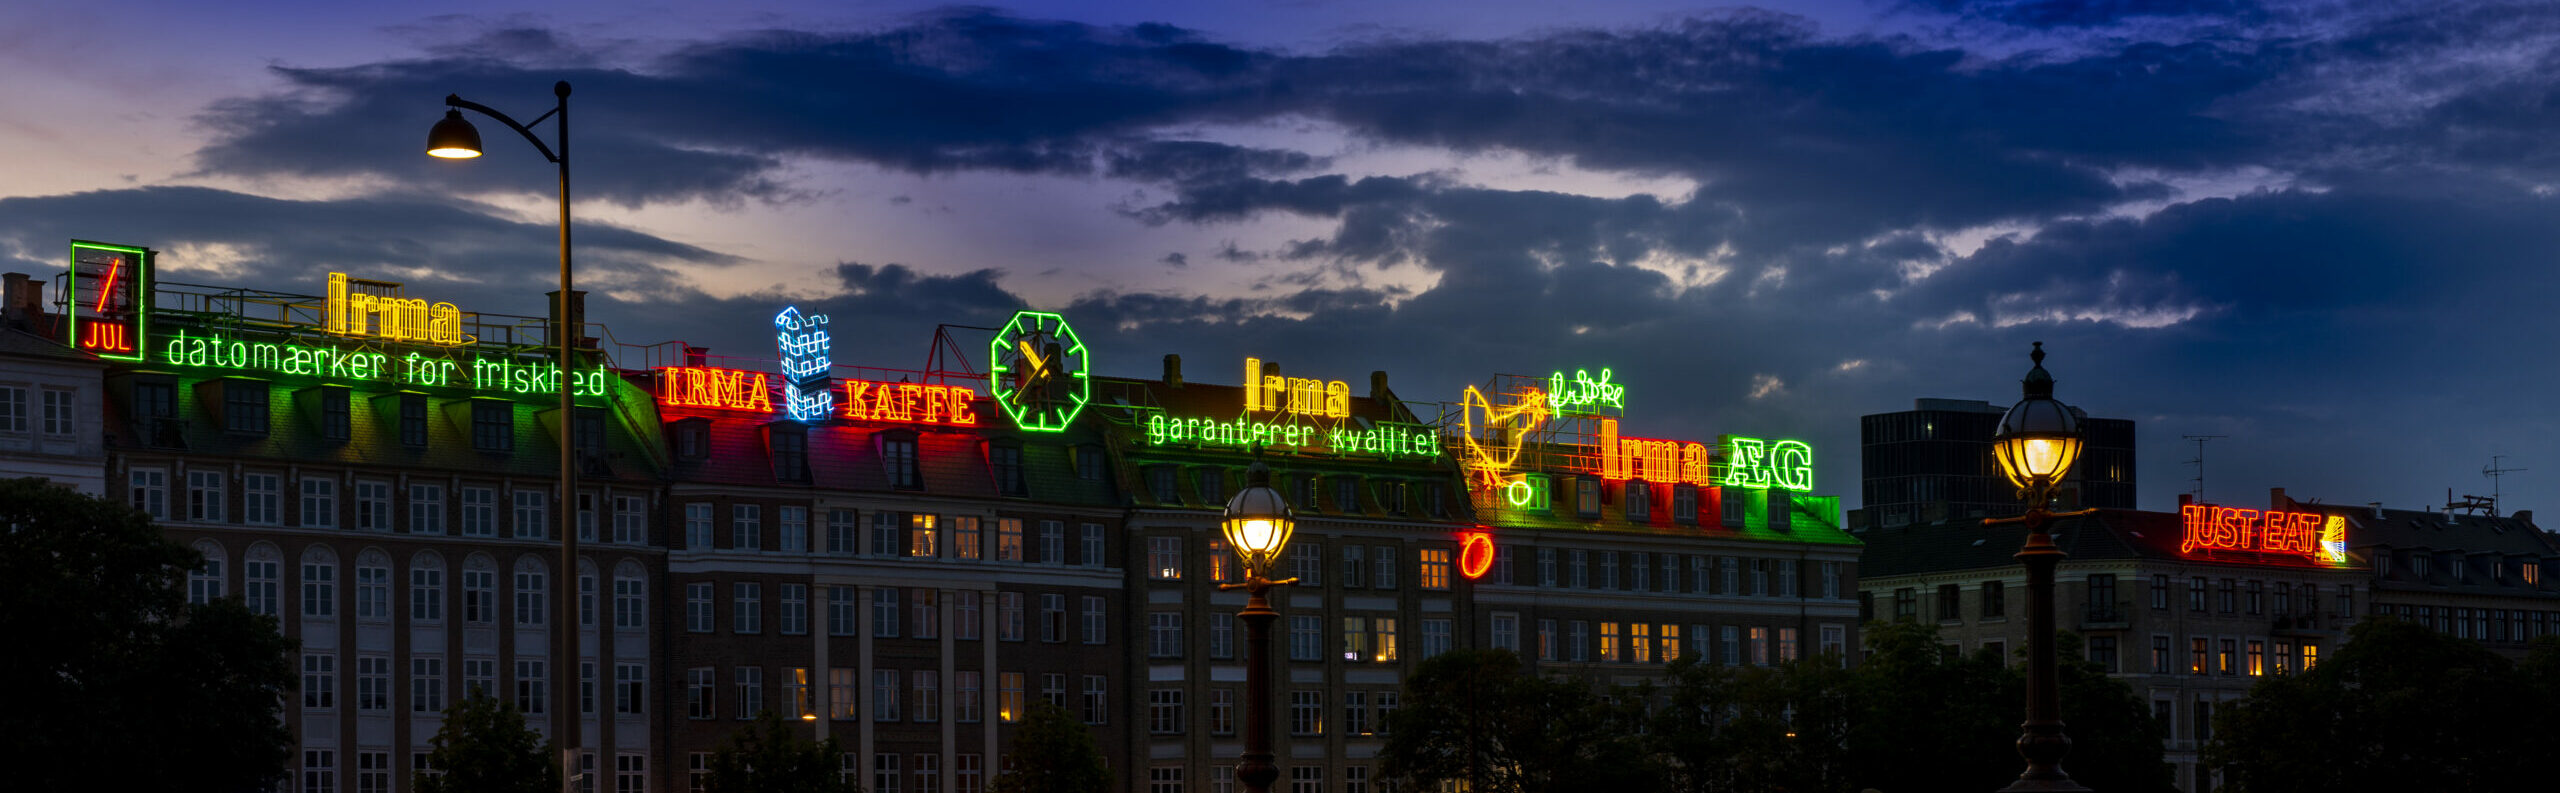 LED reklamer på Københavnske bytage